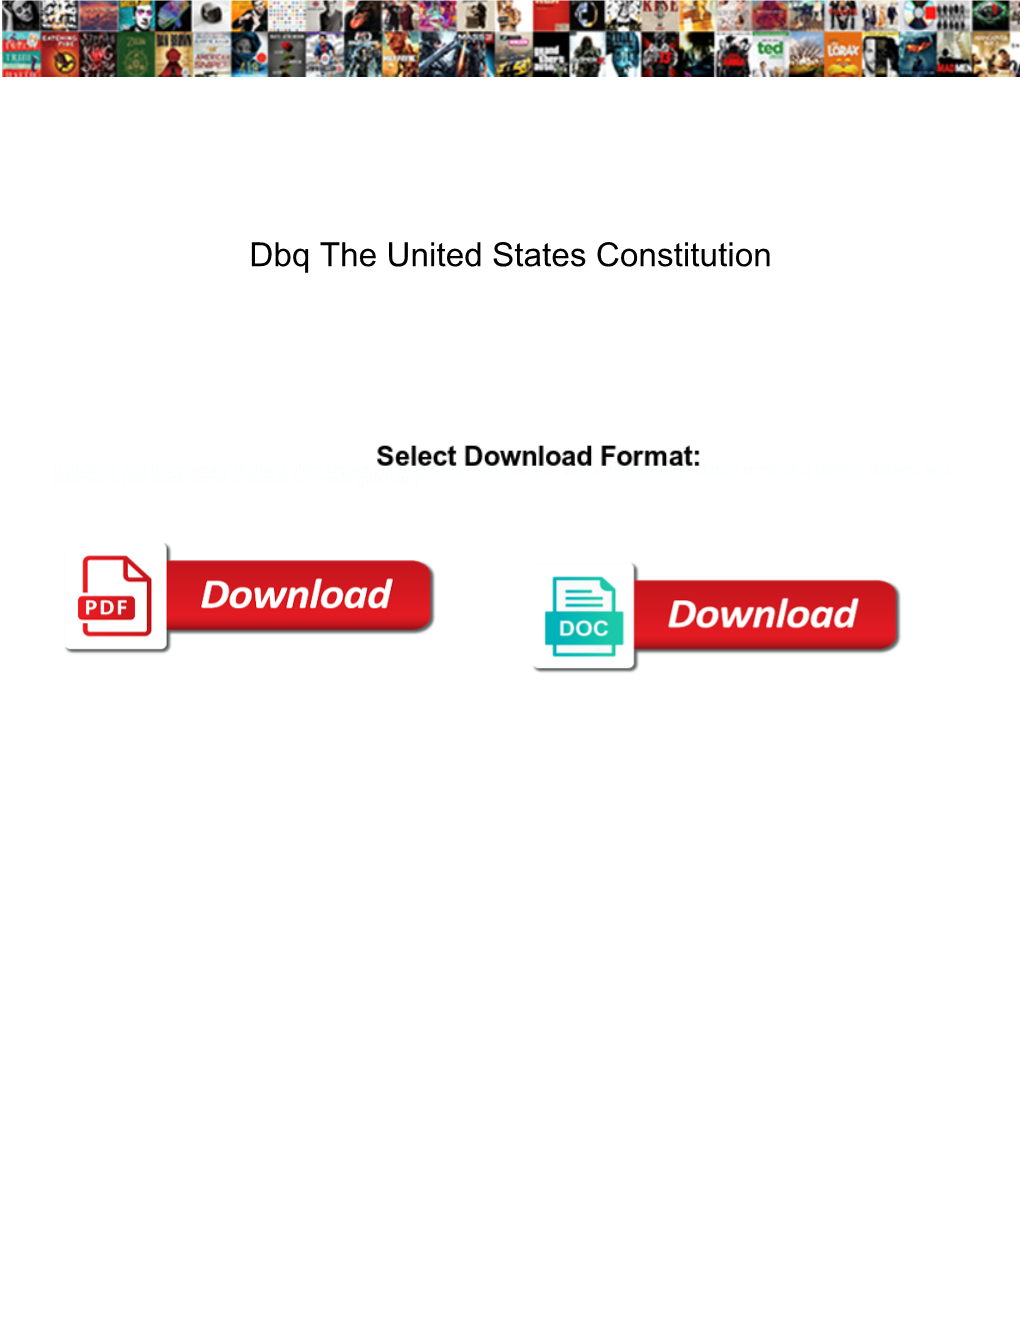 Dbq the United States Constitution